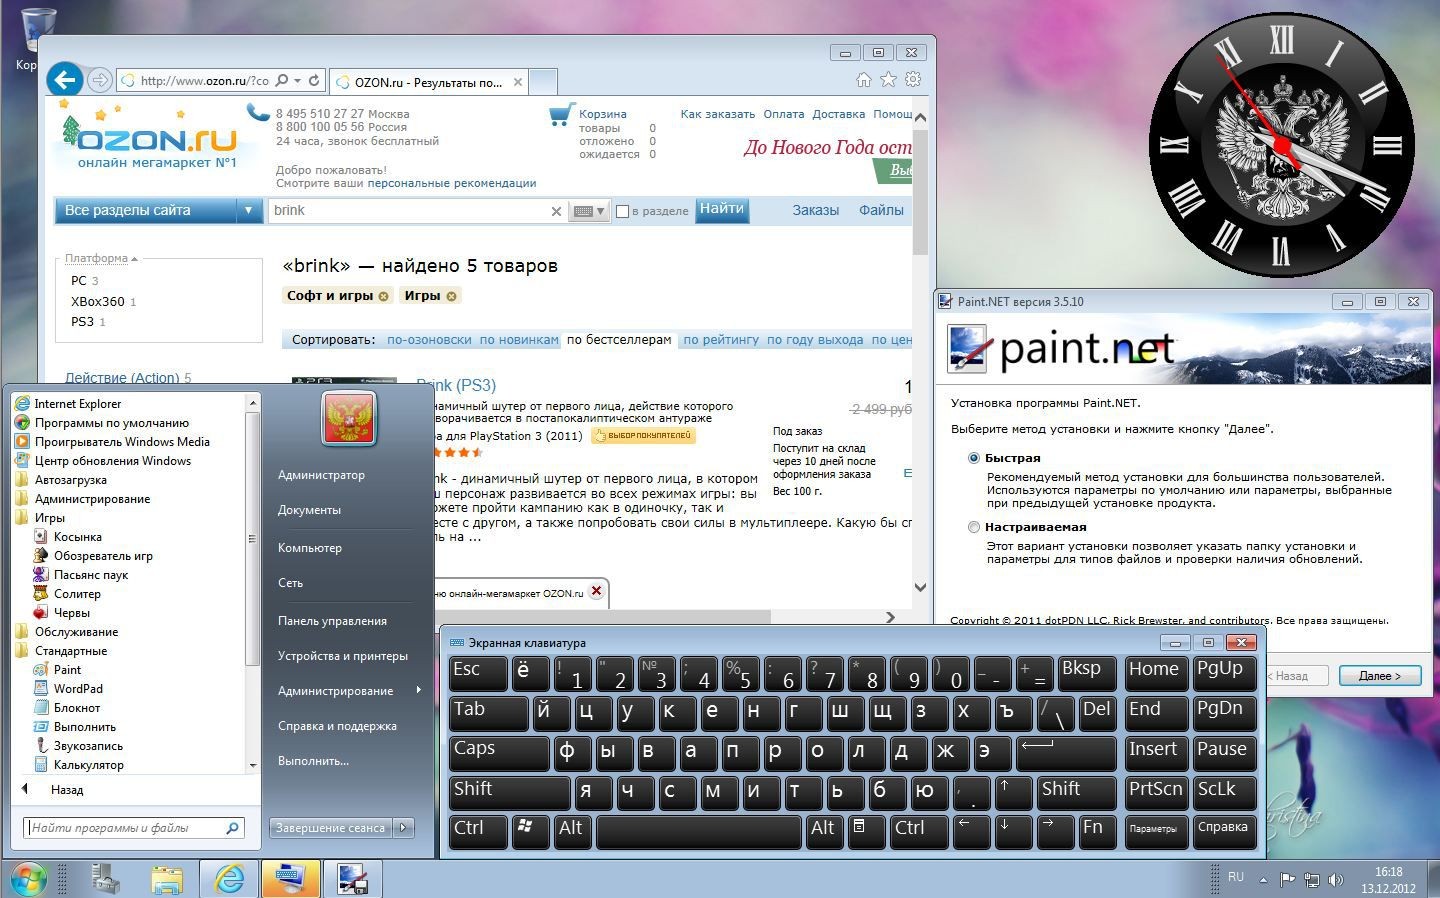 Windows 7 GameRU x64 Mini 121213 (2012/RUS)